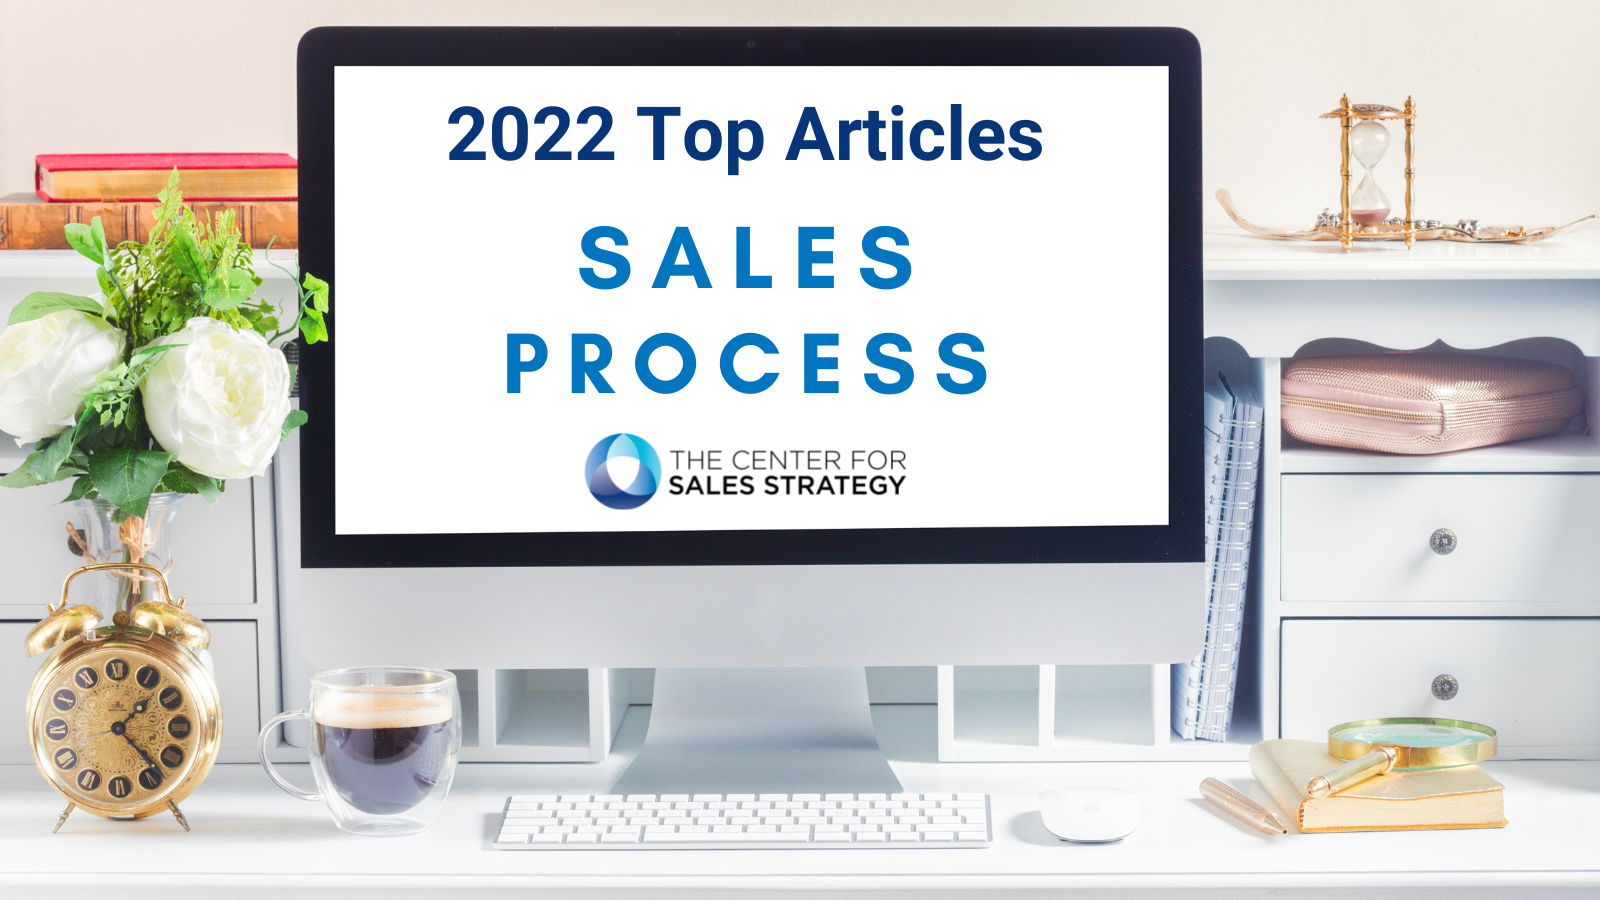 Top 2022 Articles Sales Process